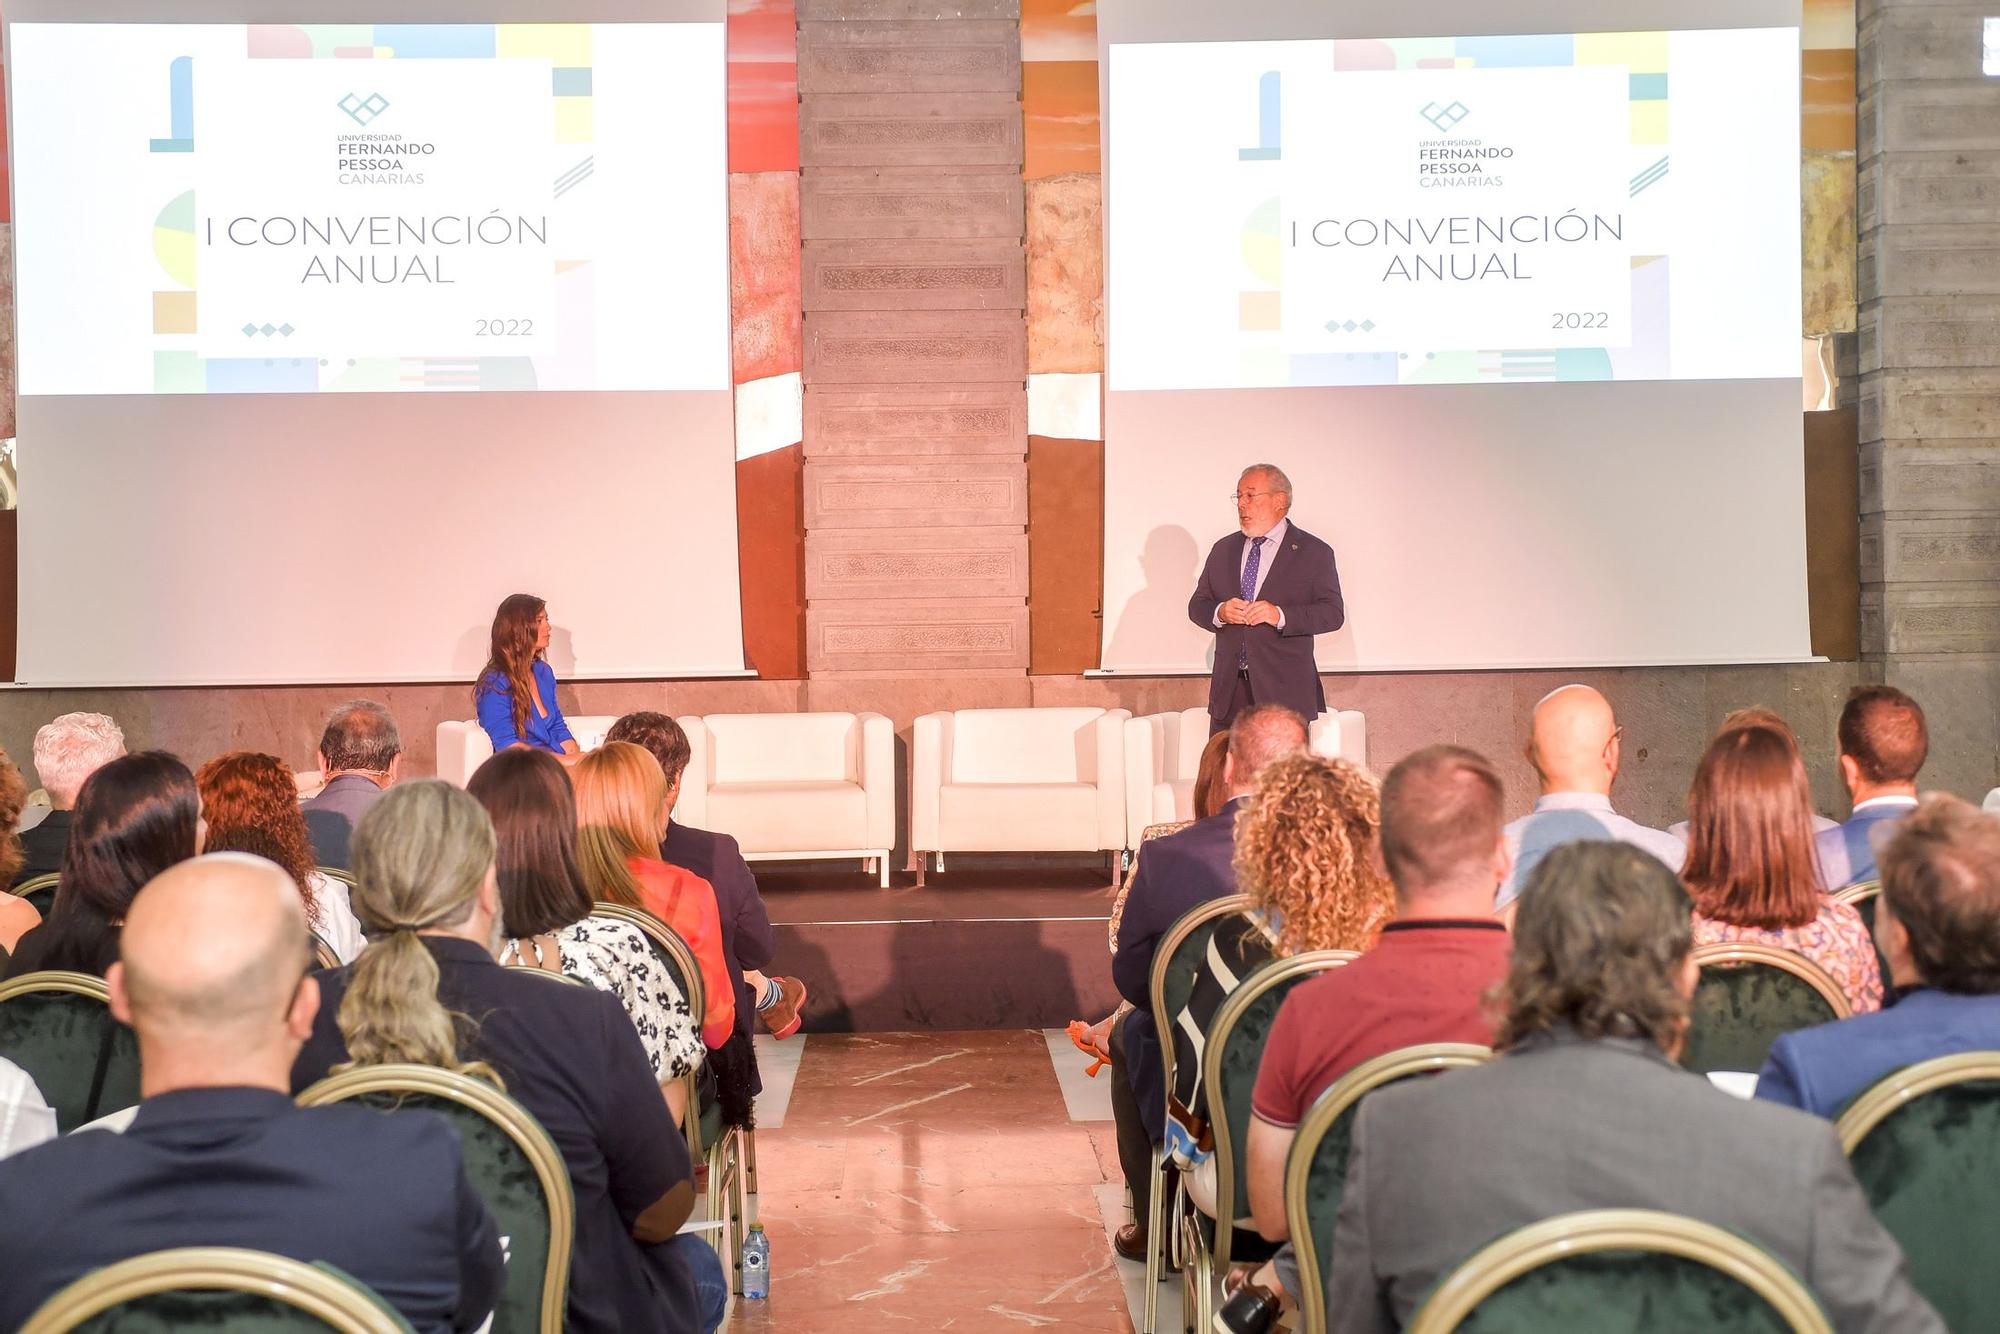 Convención de Universidad Fernando Pessoa Canarias